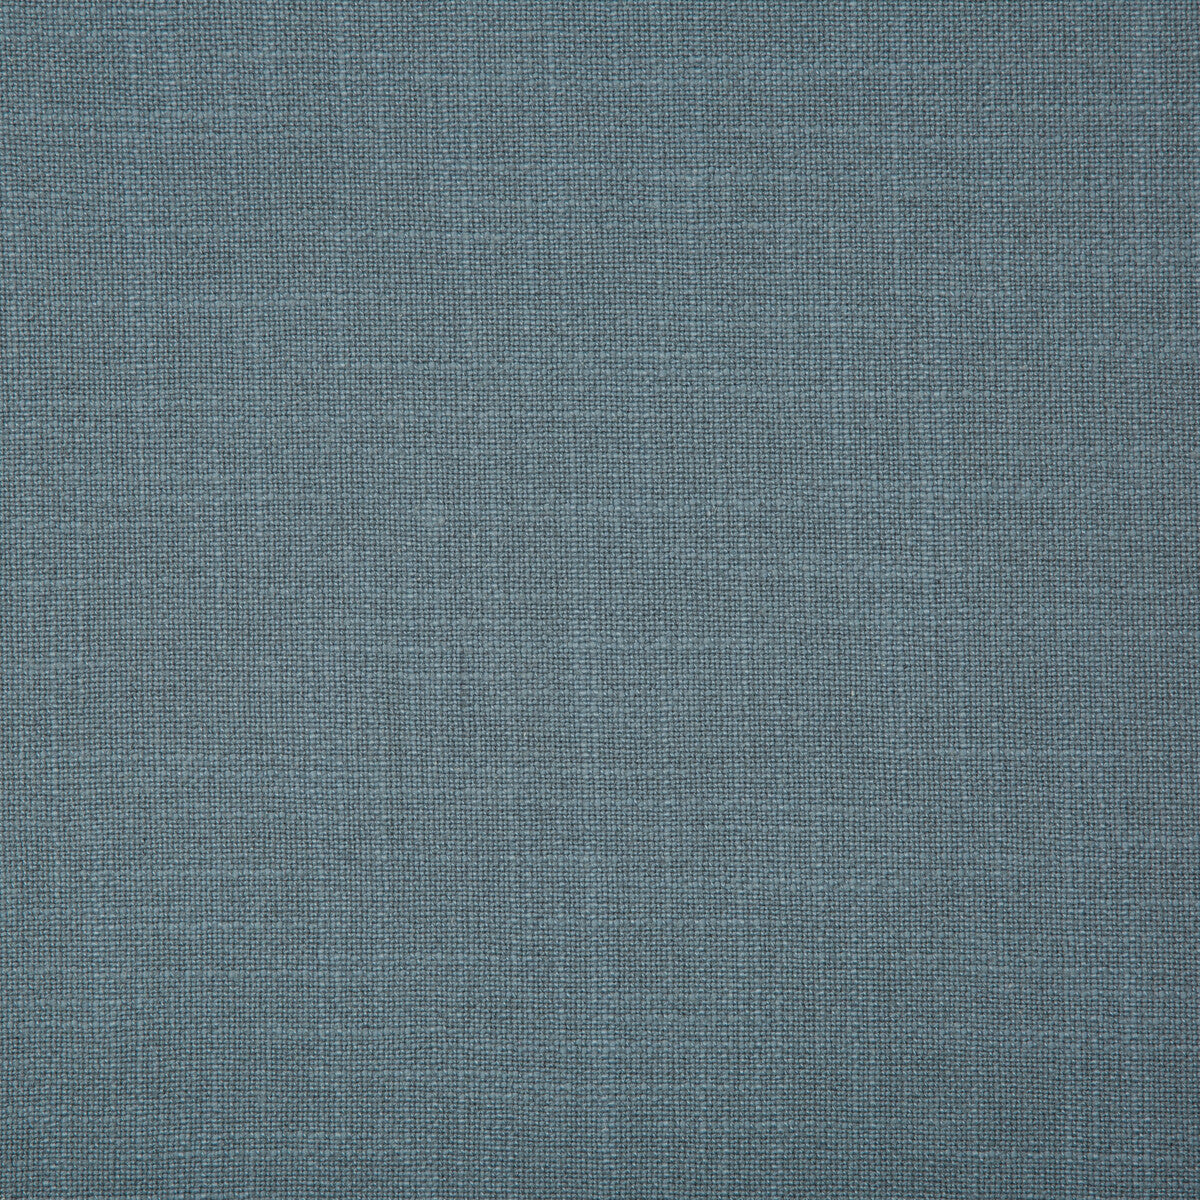 Kravet Basics fabric in 35783-5 color - pattern 35783.5.0 - by Kravet Basics